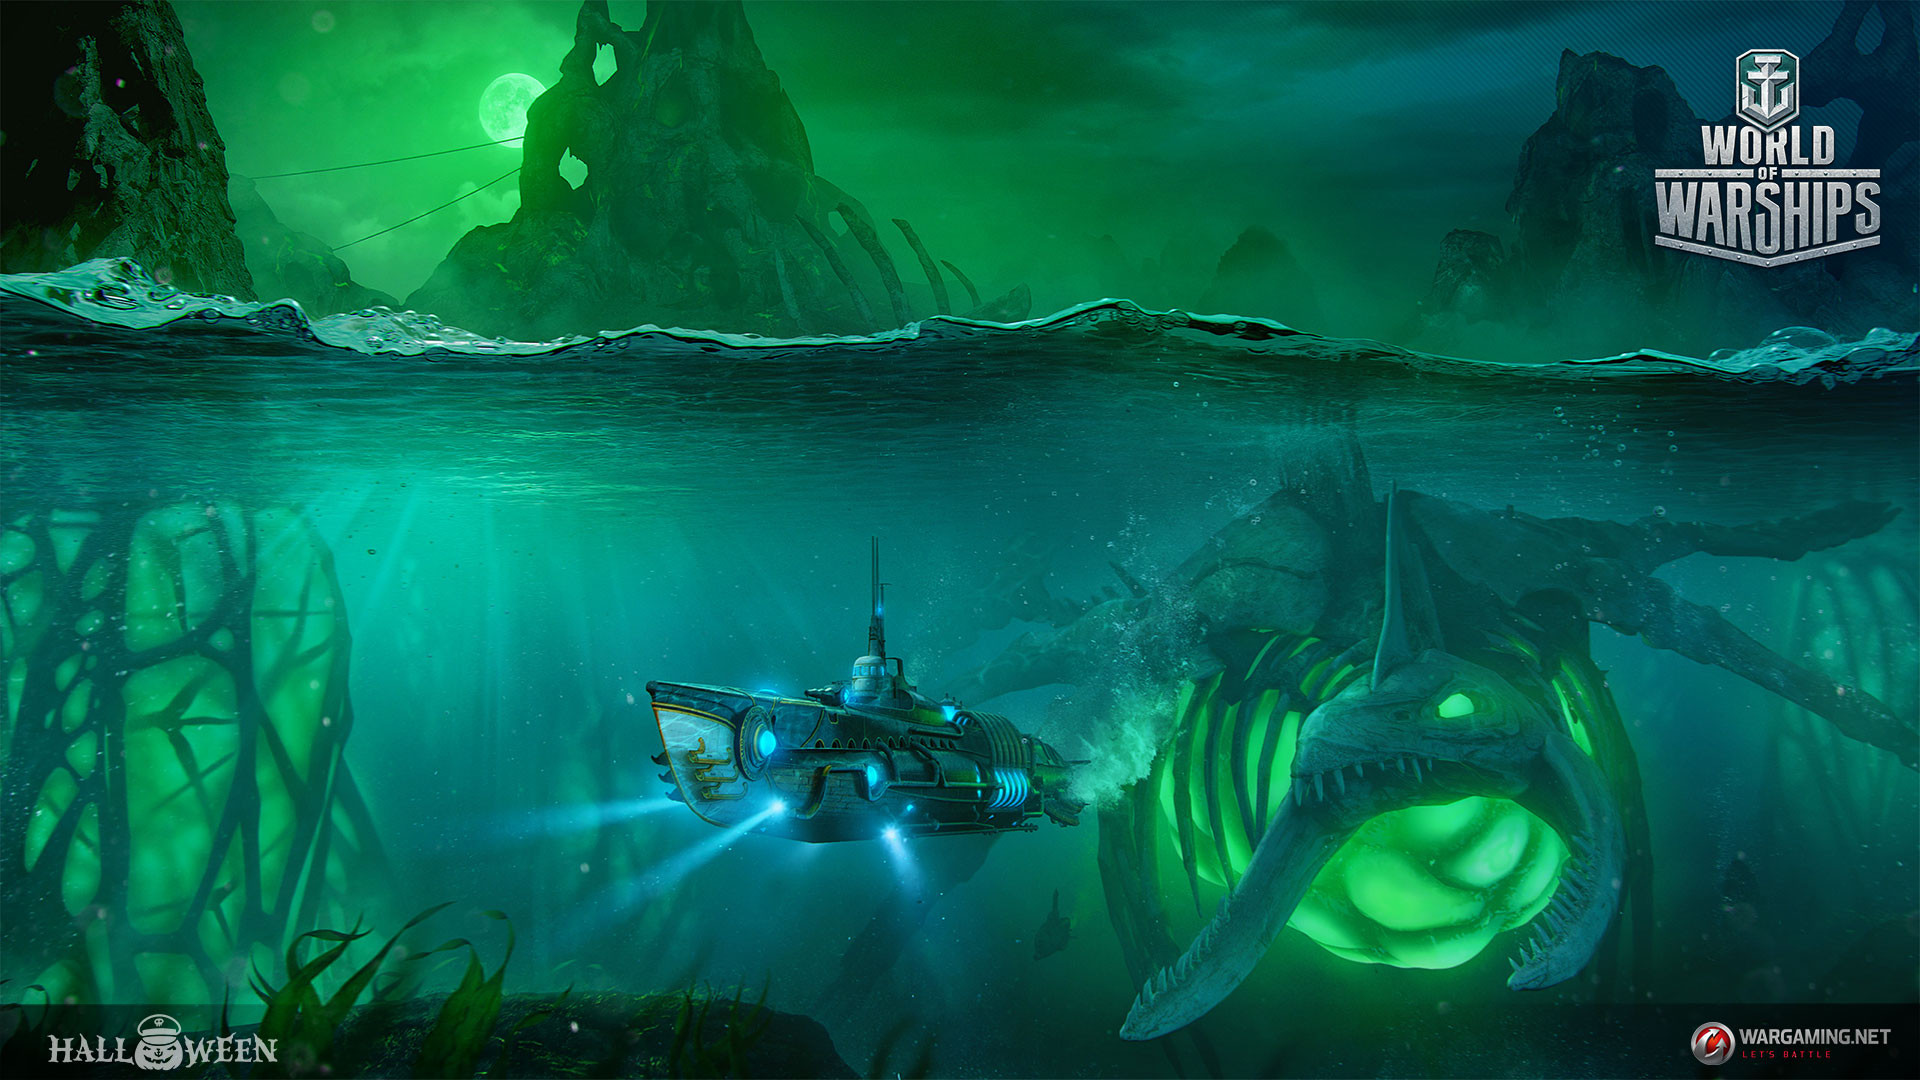 что за подводная лодка появилась в игре world of warships фото 107